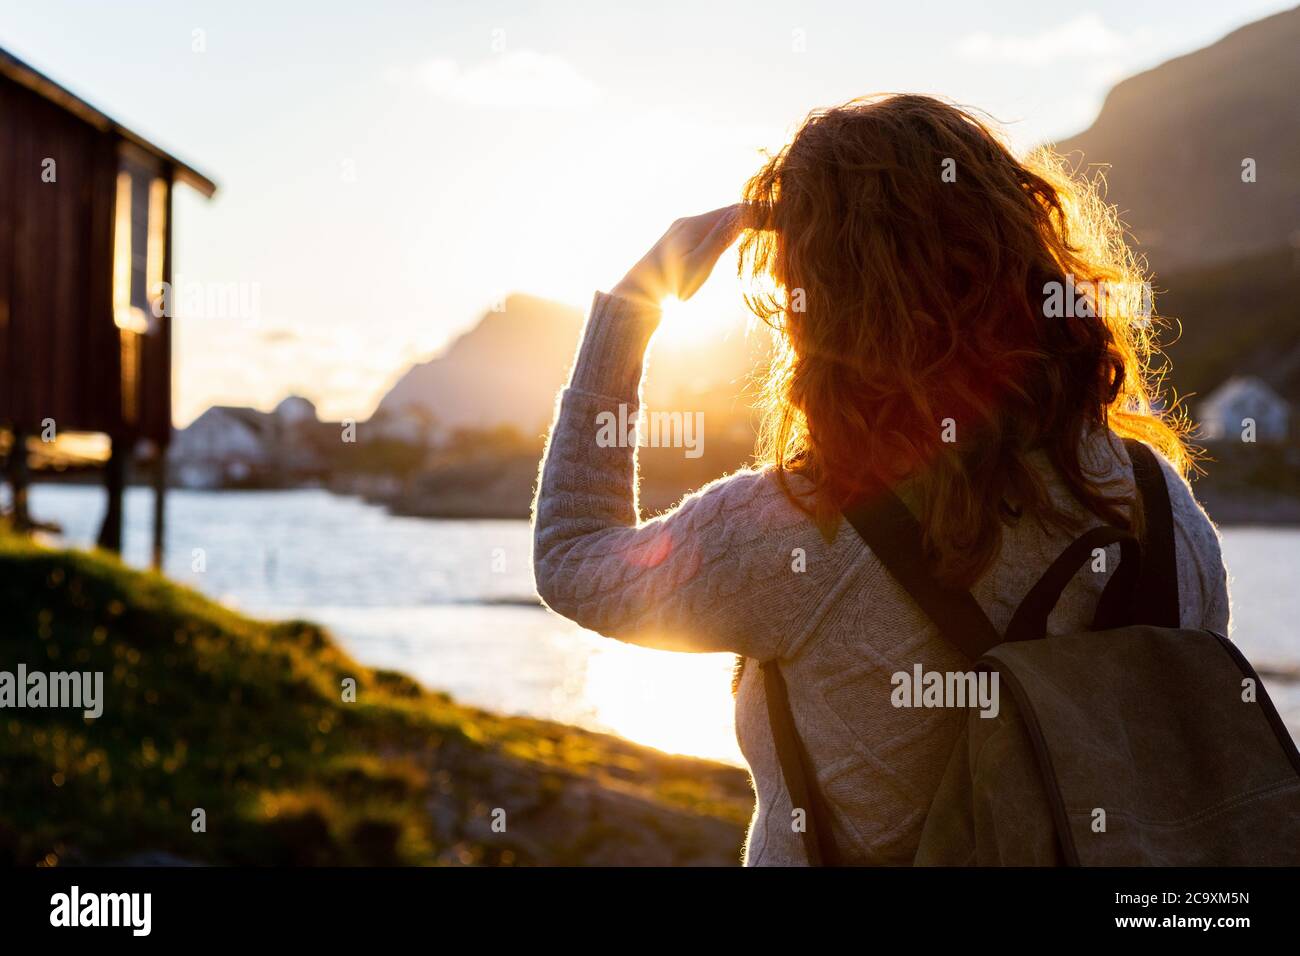 Une femme touriste avec un sac à dos regarde le coucher de soleil sur les îles Lofoten, en Norvège Banque D'Images